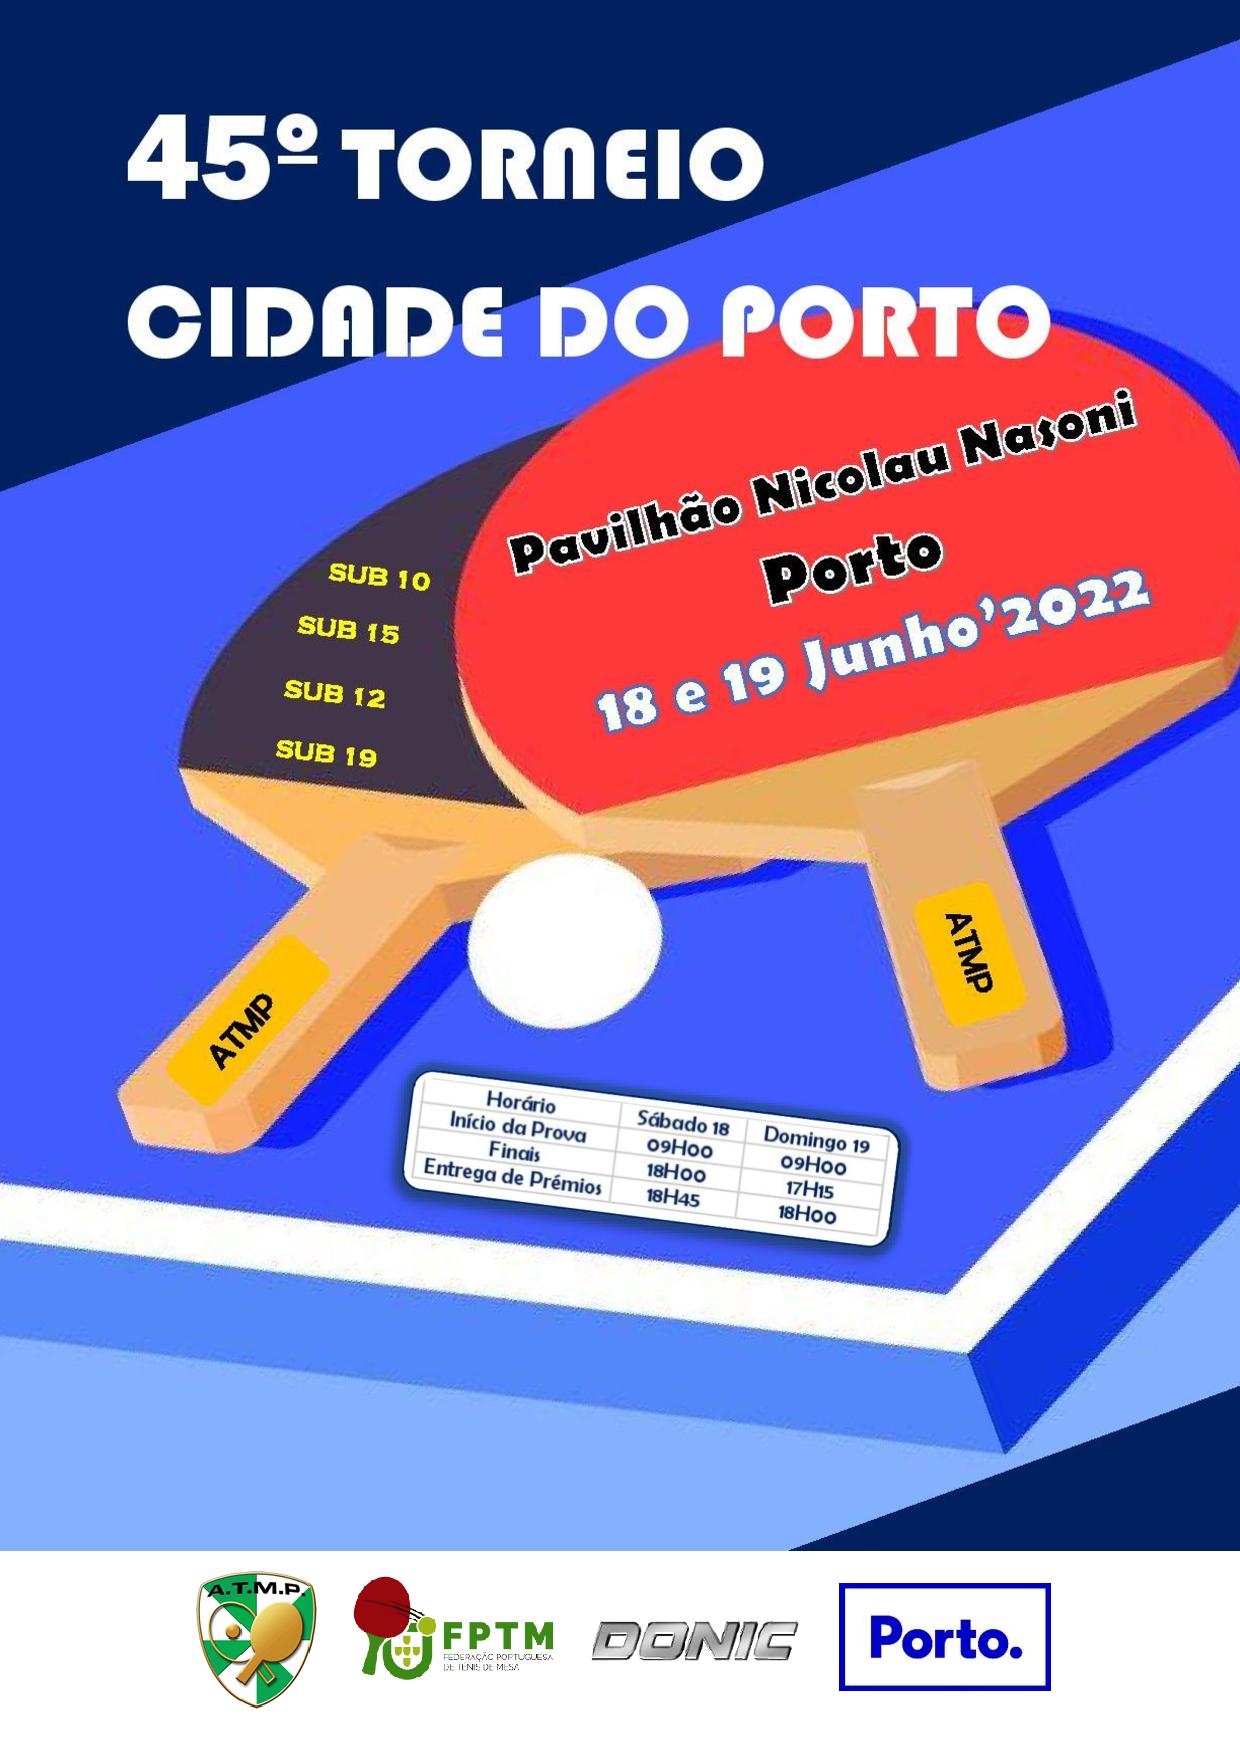 45º Torneio Cidade do Porto CARTAZ 1